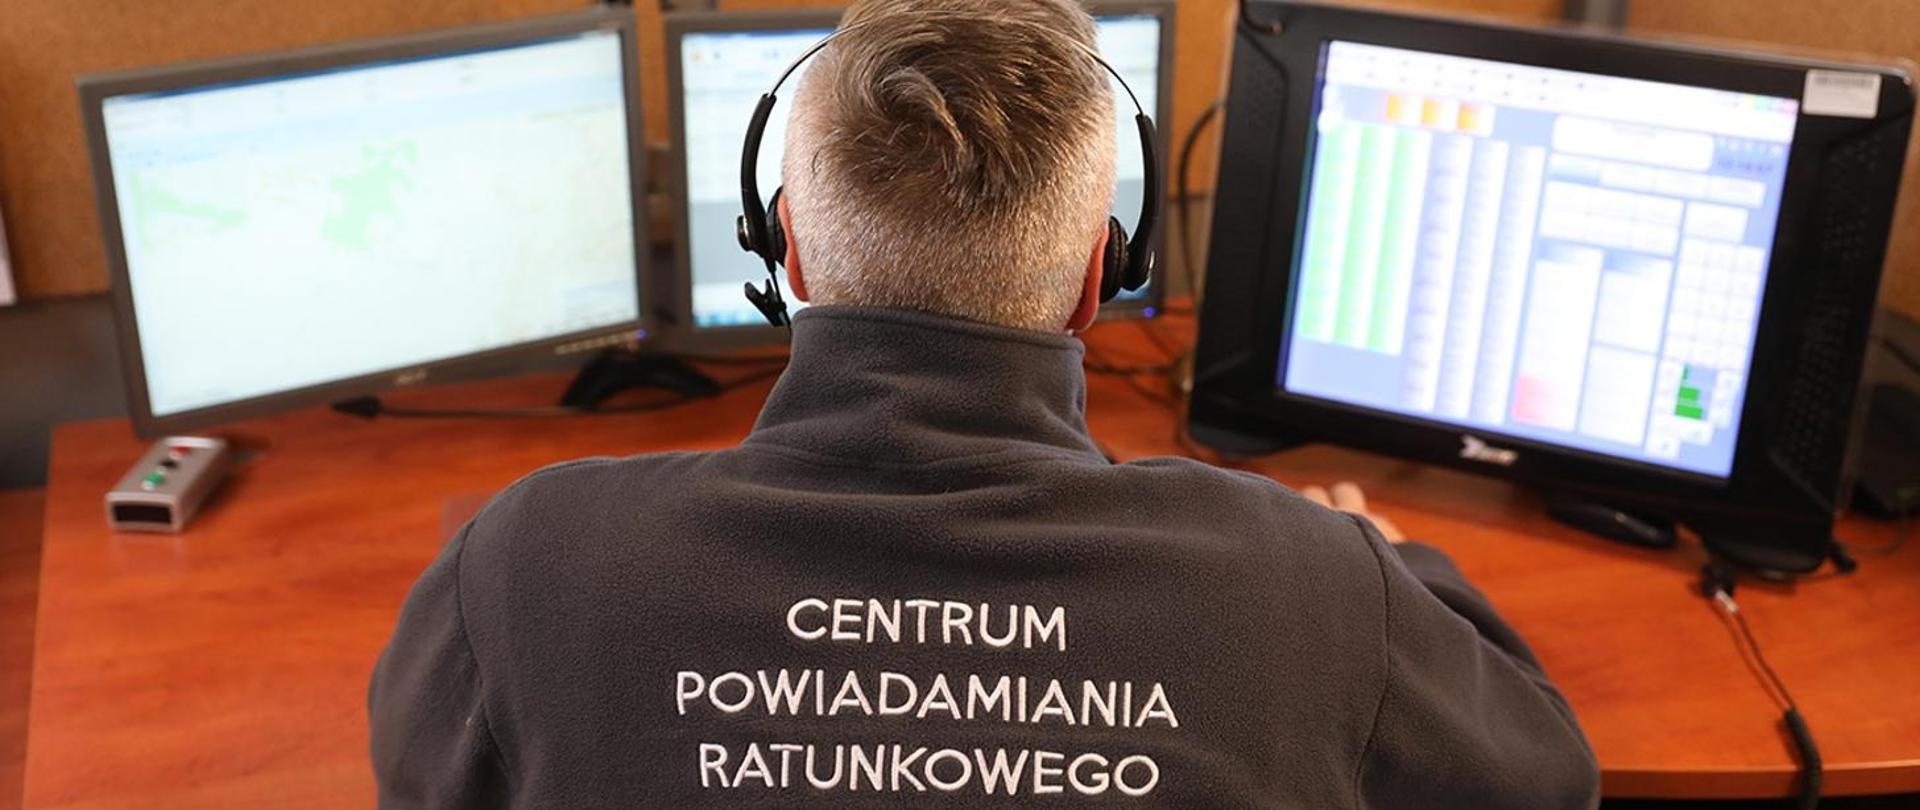 operator siedzi w słuchawkach przed trzema monitorami, na plecach ma napis"CENTRUM POWIADAMIANIA RATUNKOWEGO"